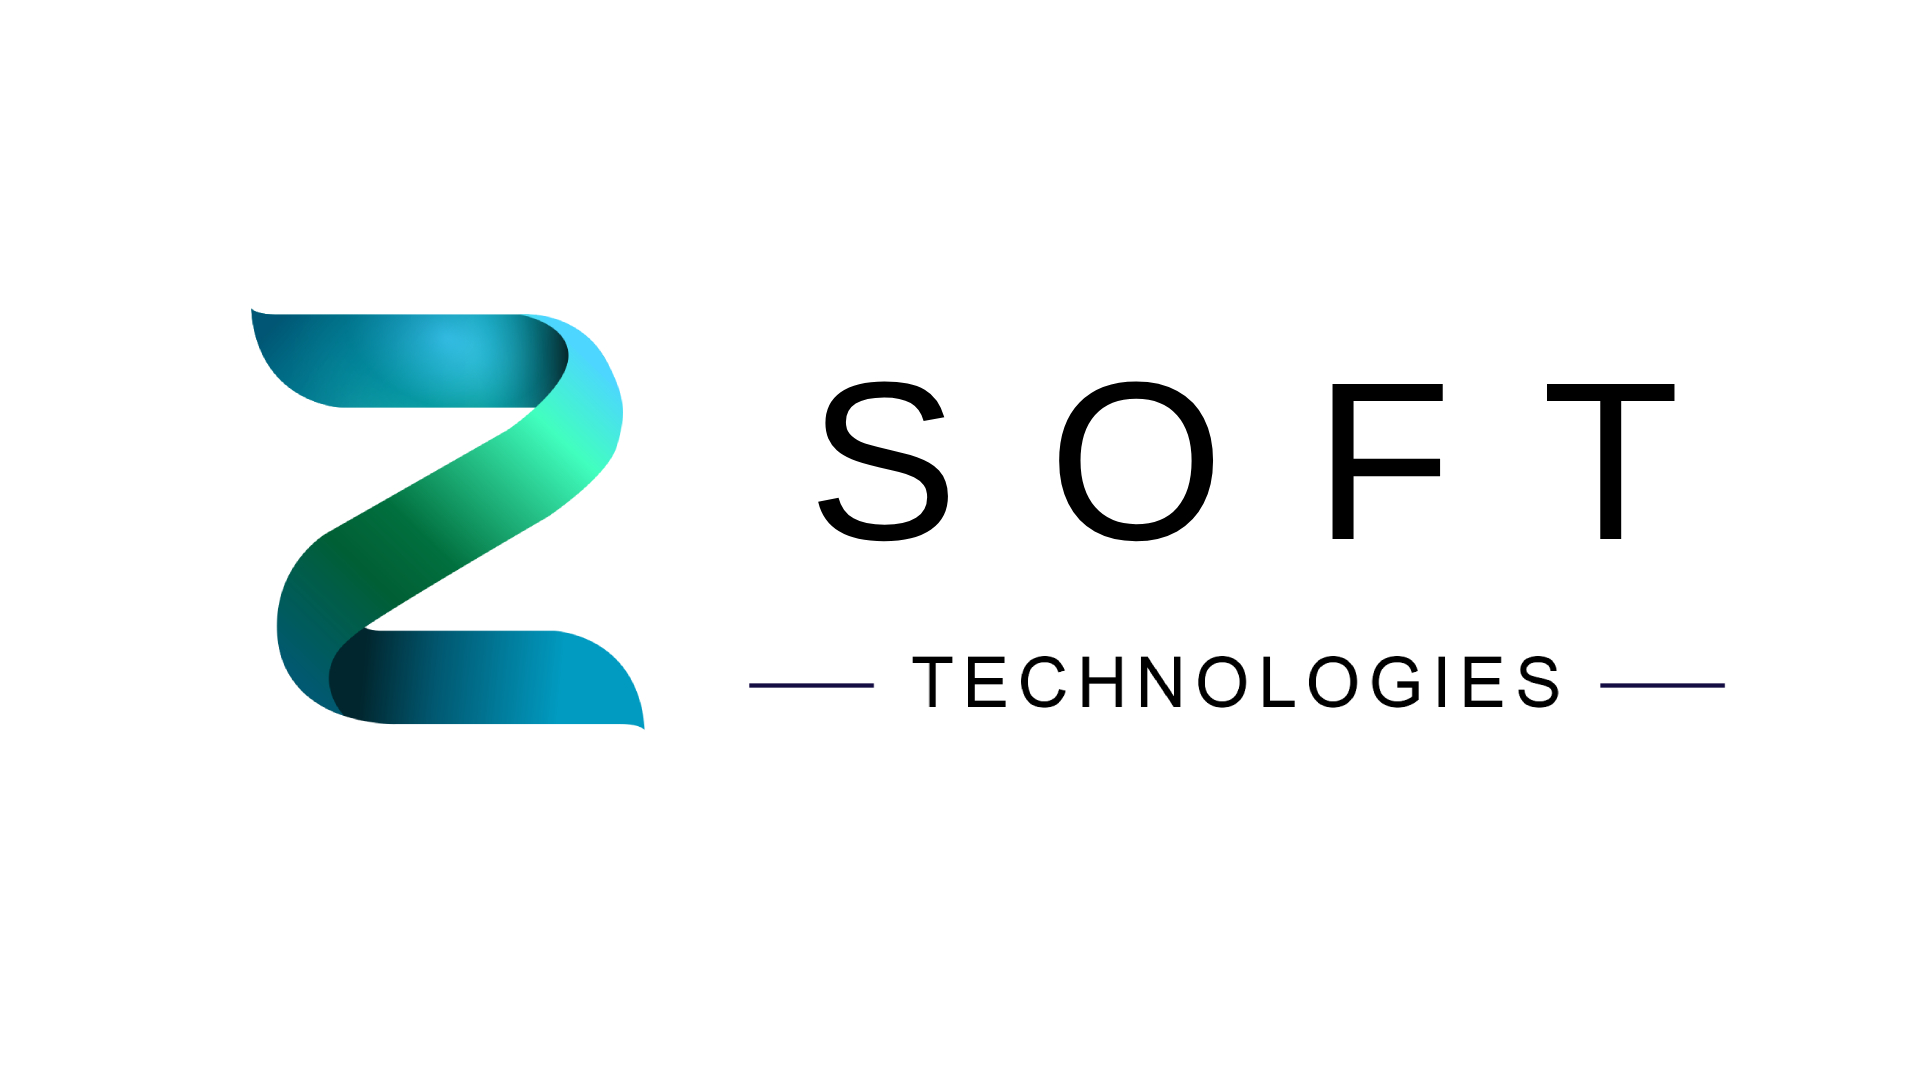 Zsoft Technologies Pty Ltd